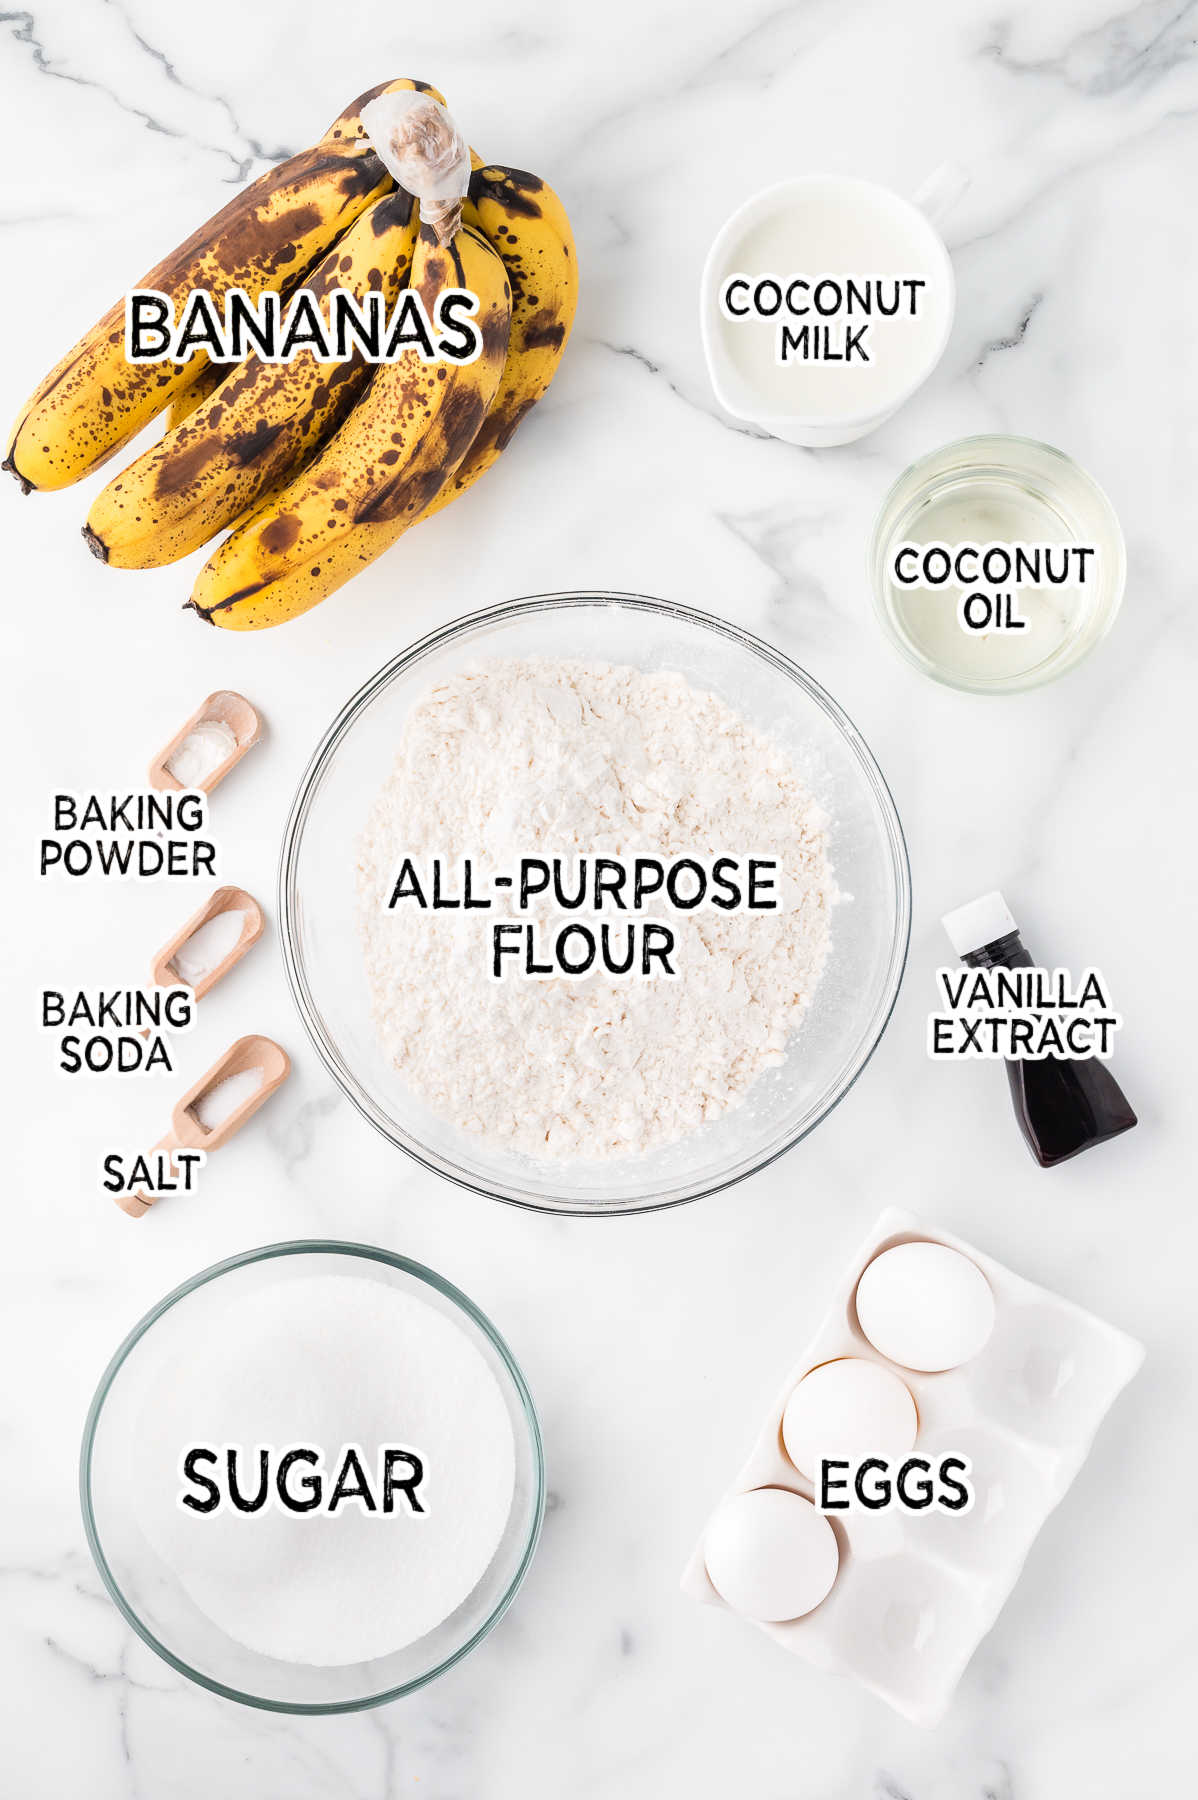 Ingredients to make banana cupcakes.